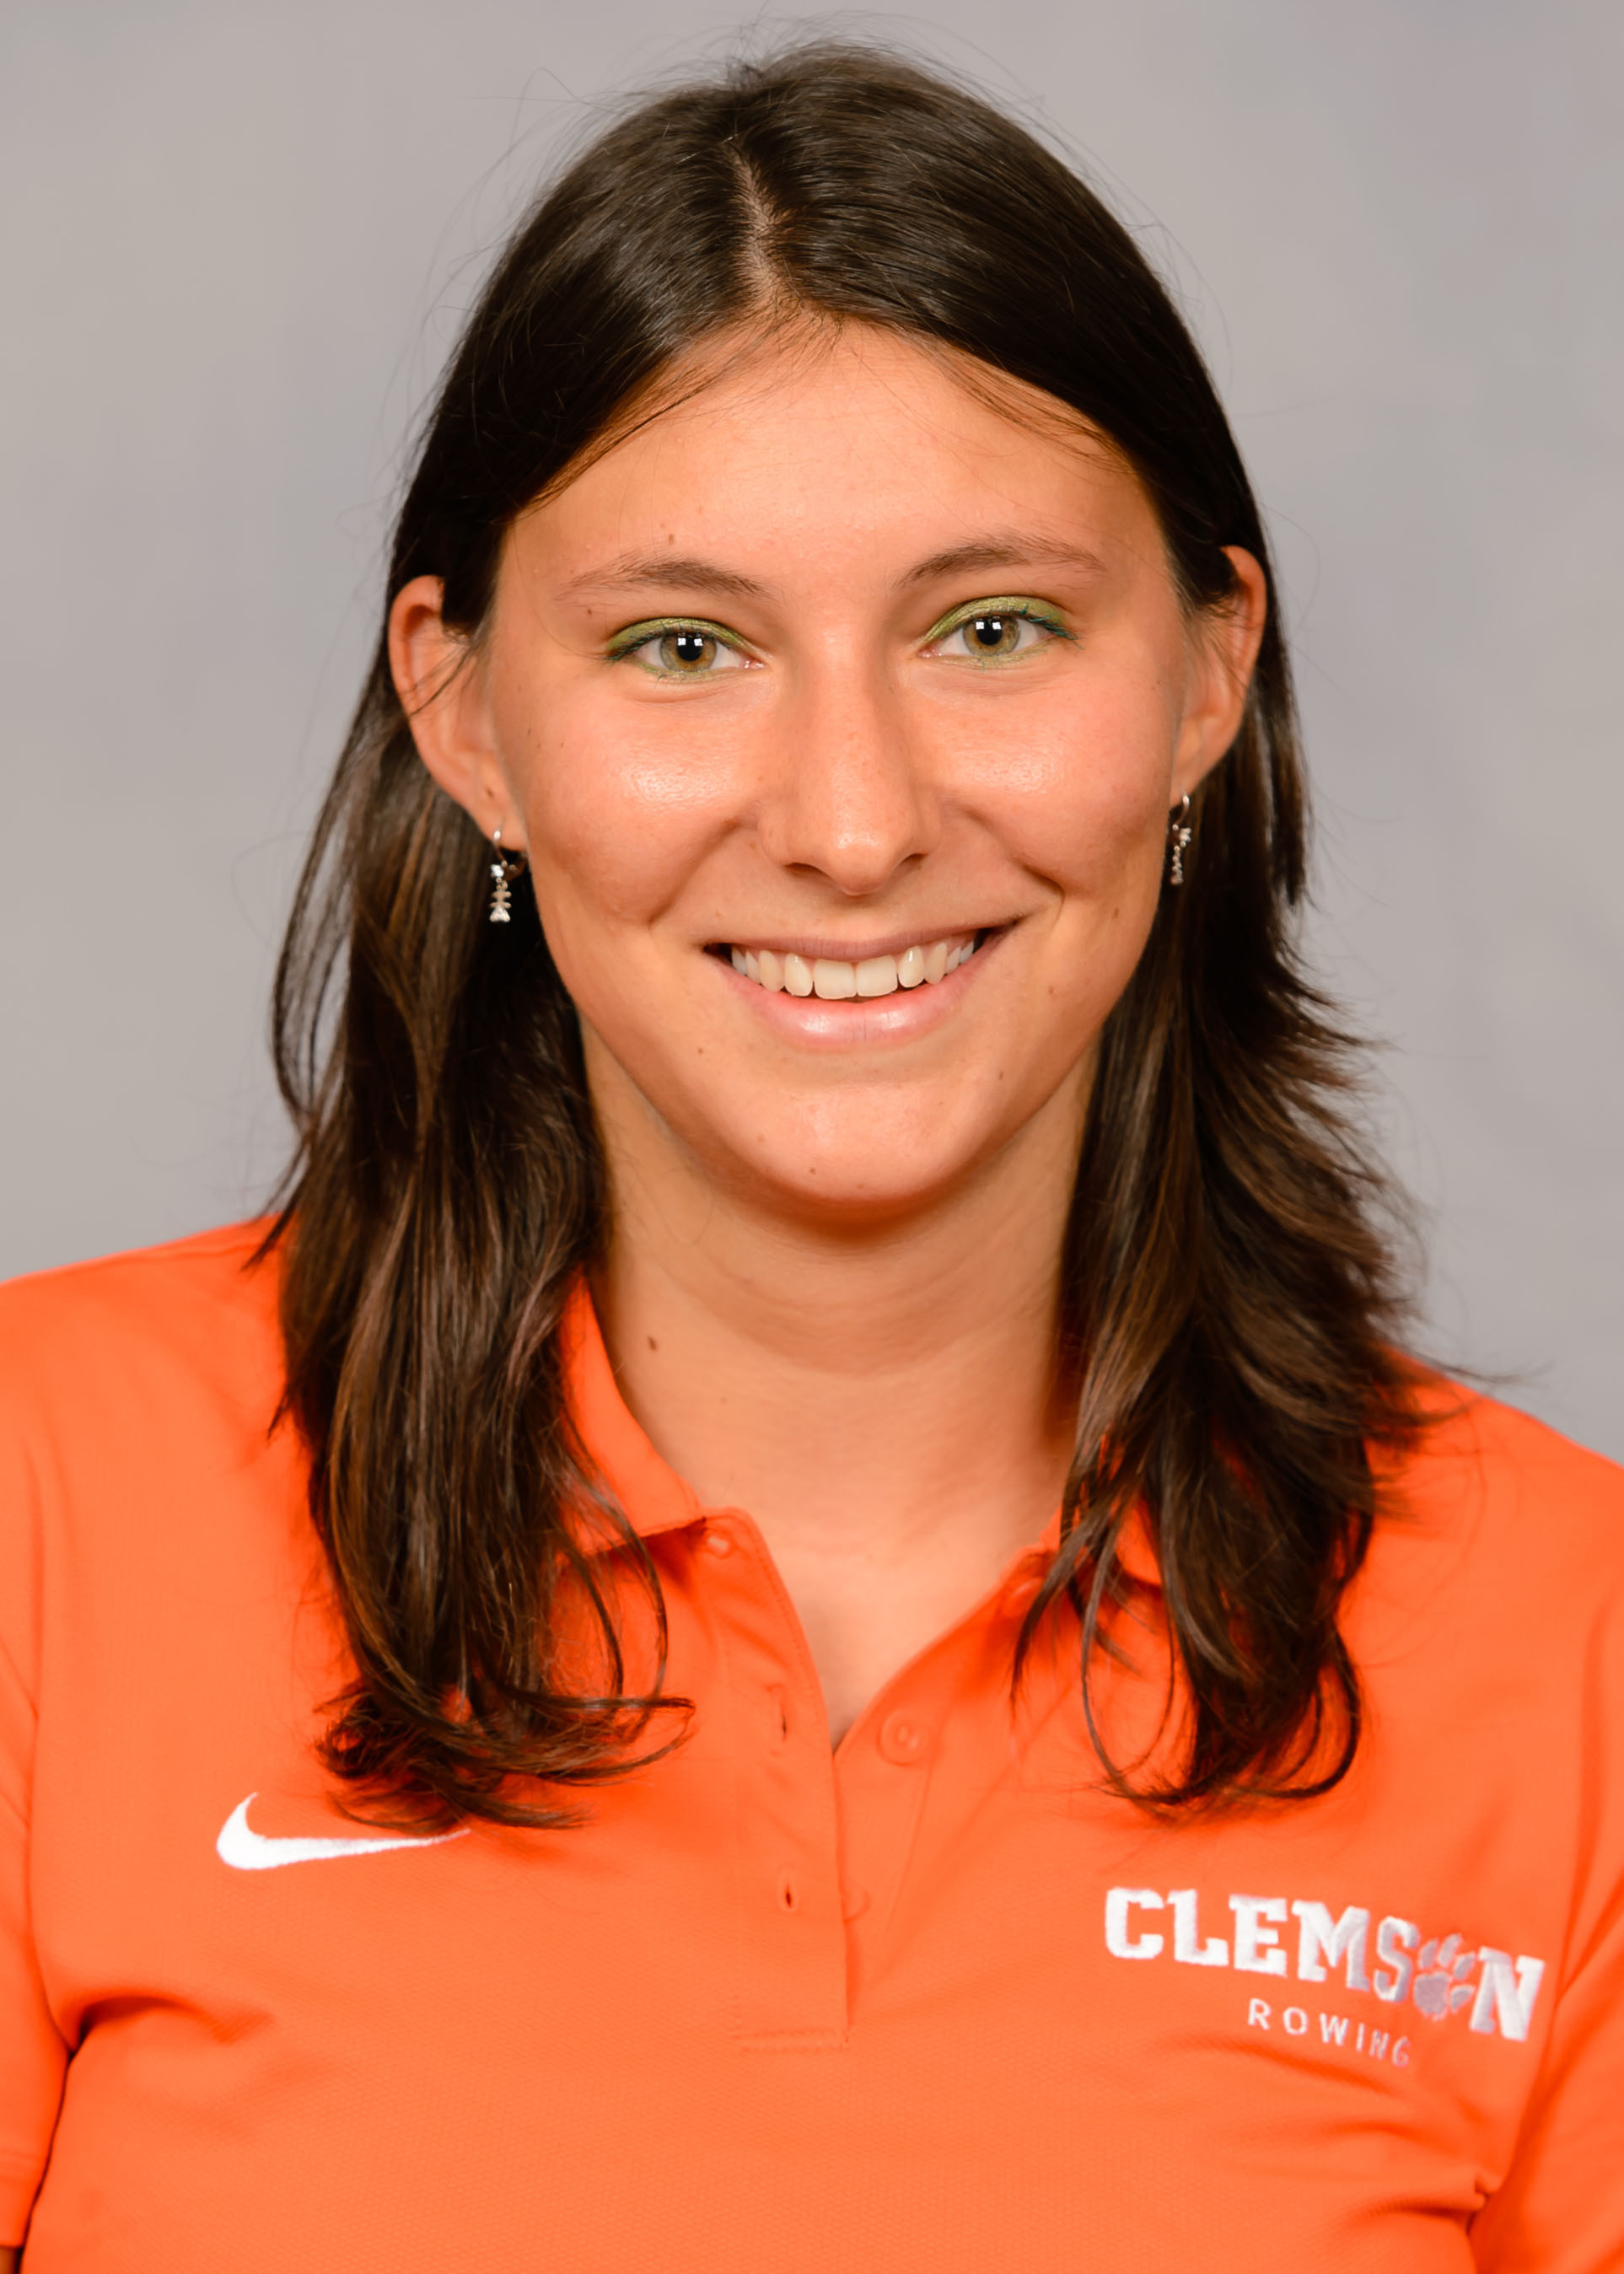 Giorgia Bergamasco - Rowing - Clemson University Athletics